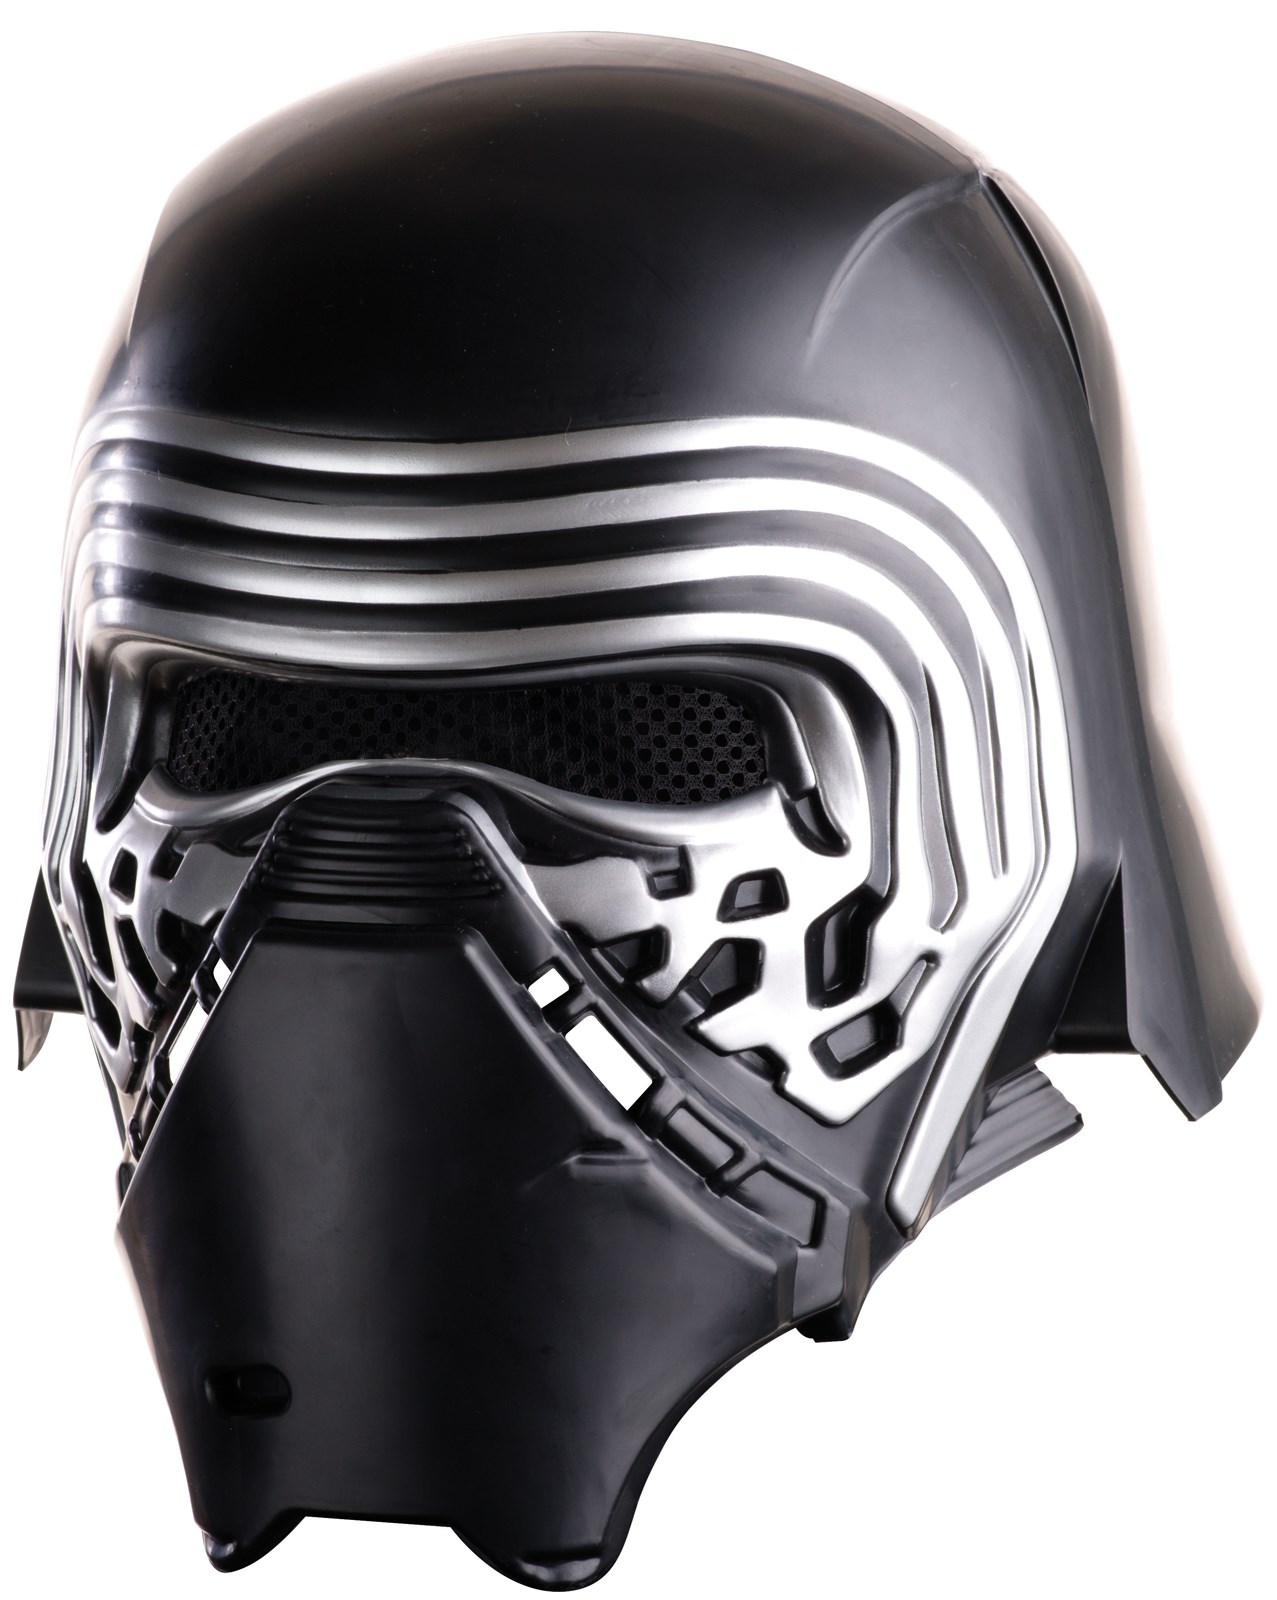 Star Wars:  The Force Awakens – Boys Kylo Ren Full Helmet